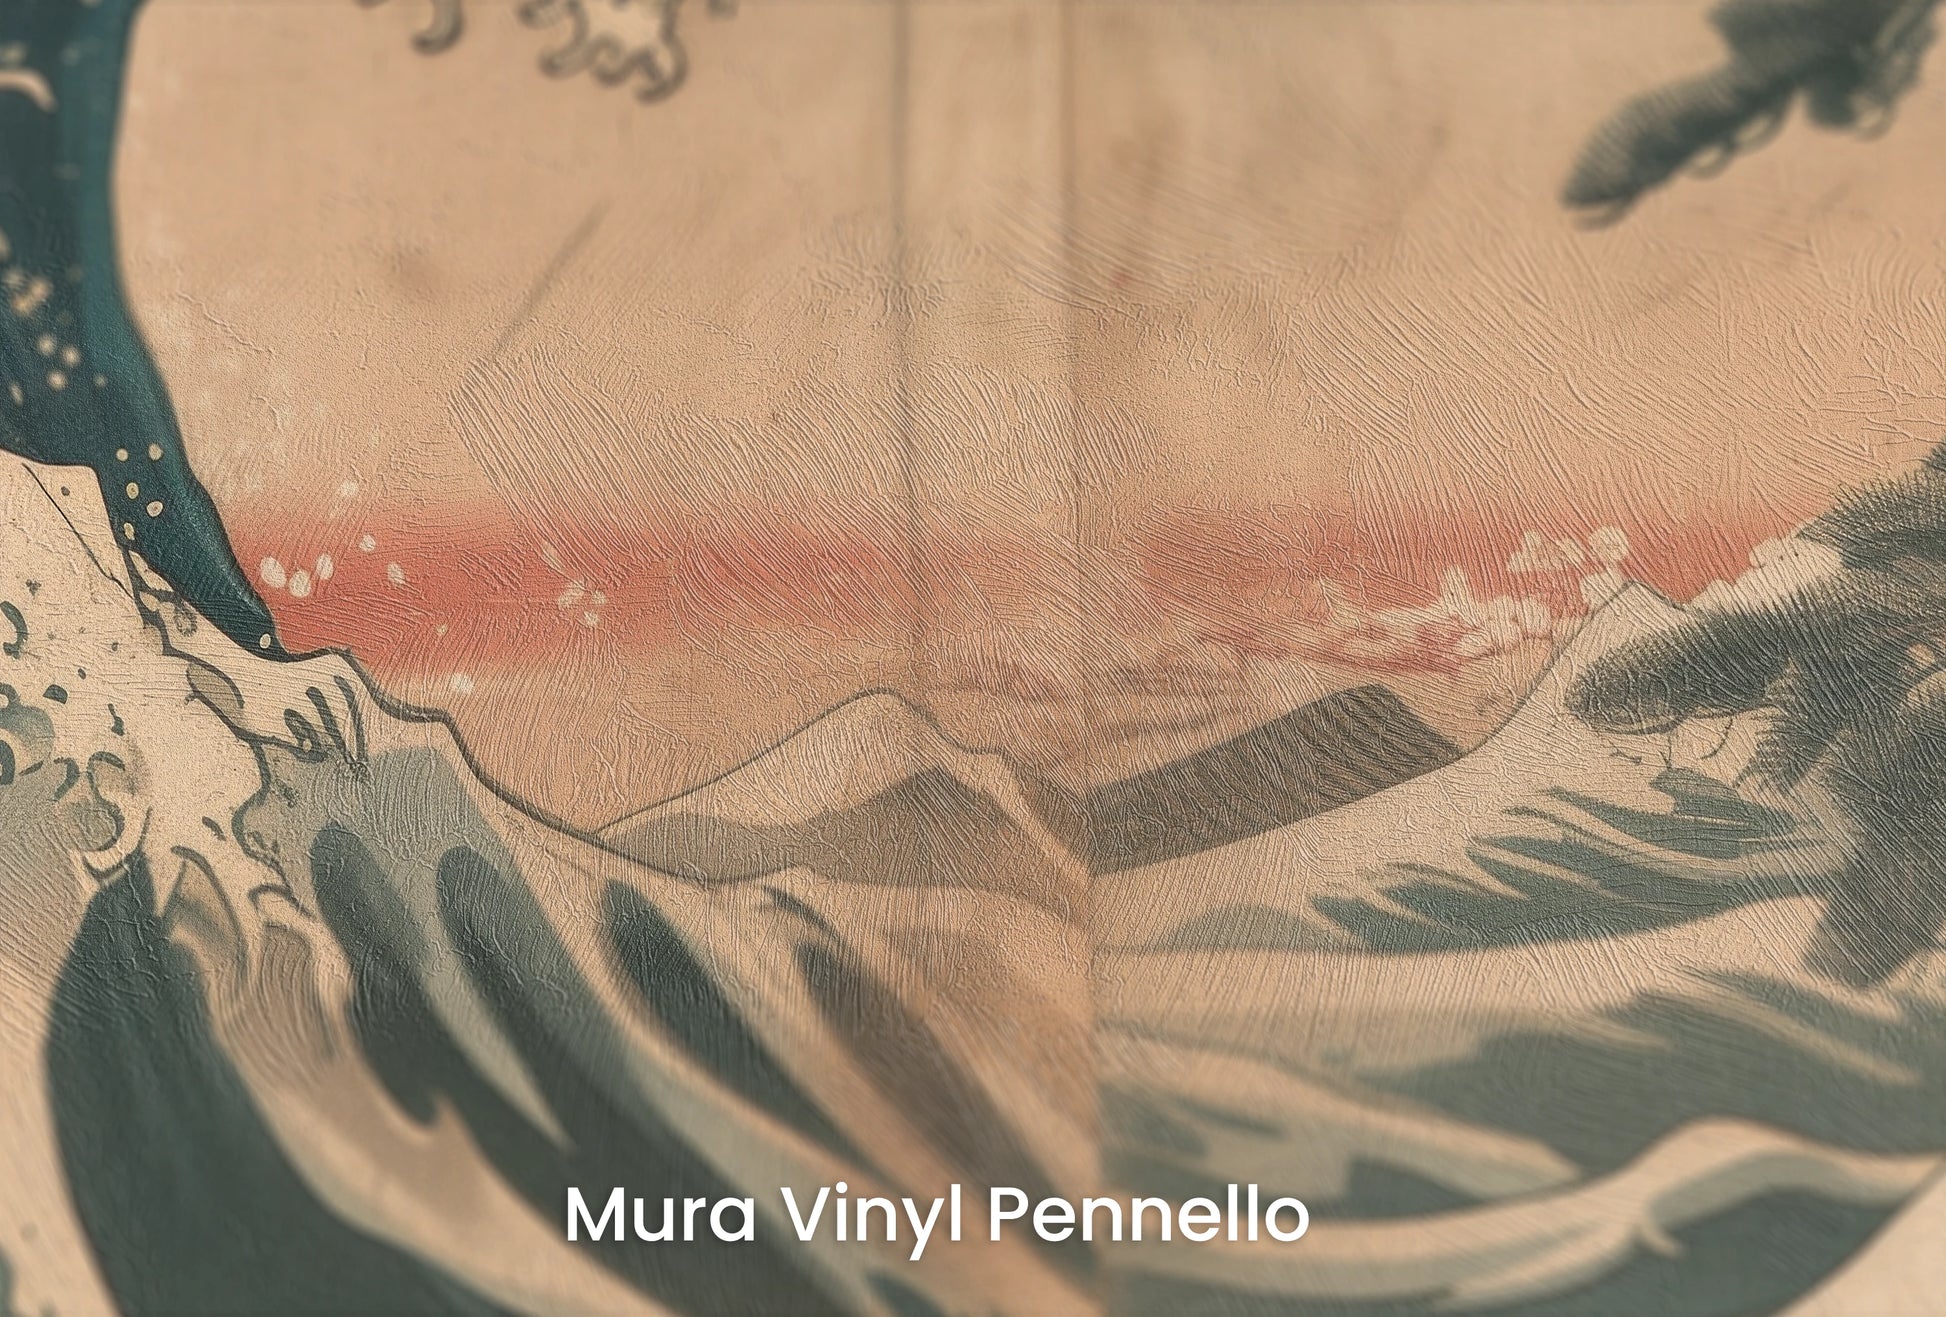 Zbliżenie na artystyczną fototapetę o nazwie Pine Crest Wave na podłożu Mura Vinyl Pennello - faktura pociągnięć pędzla malarskiego.